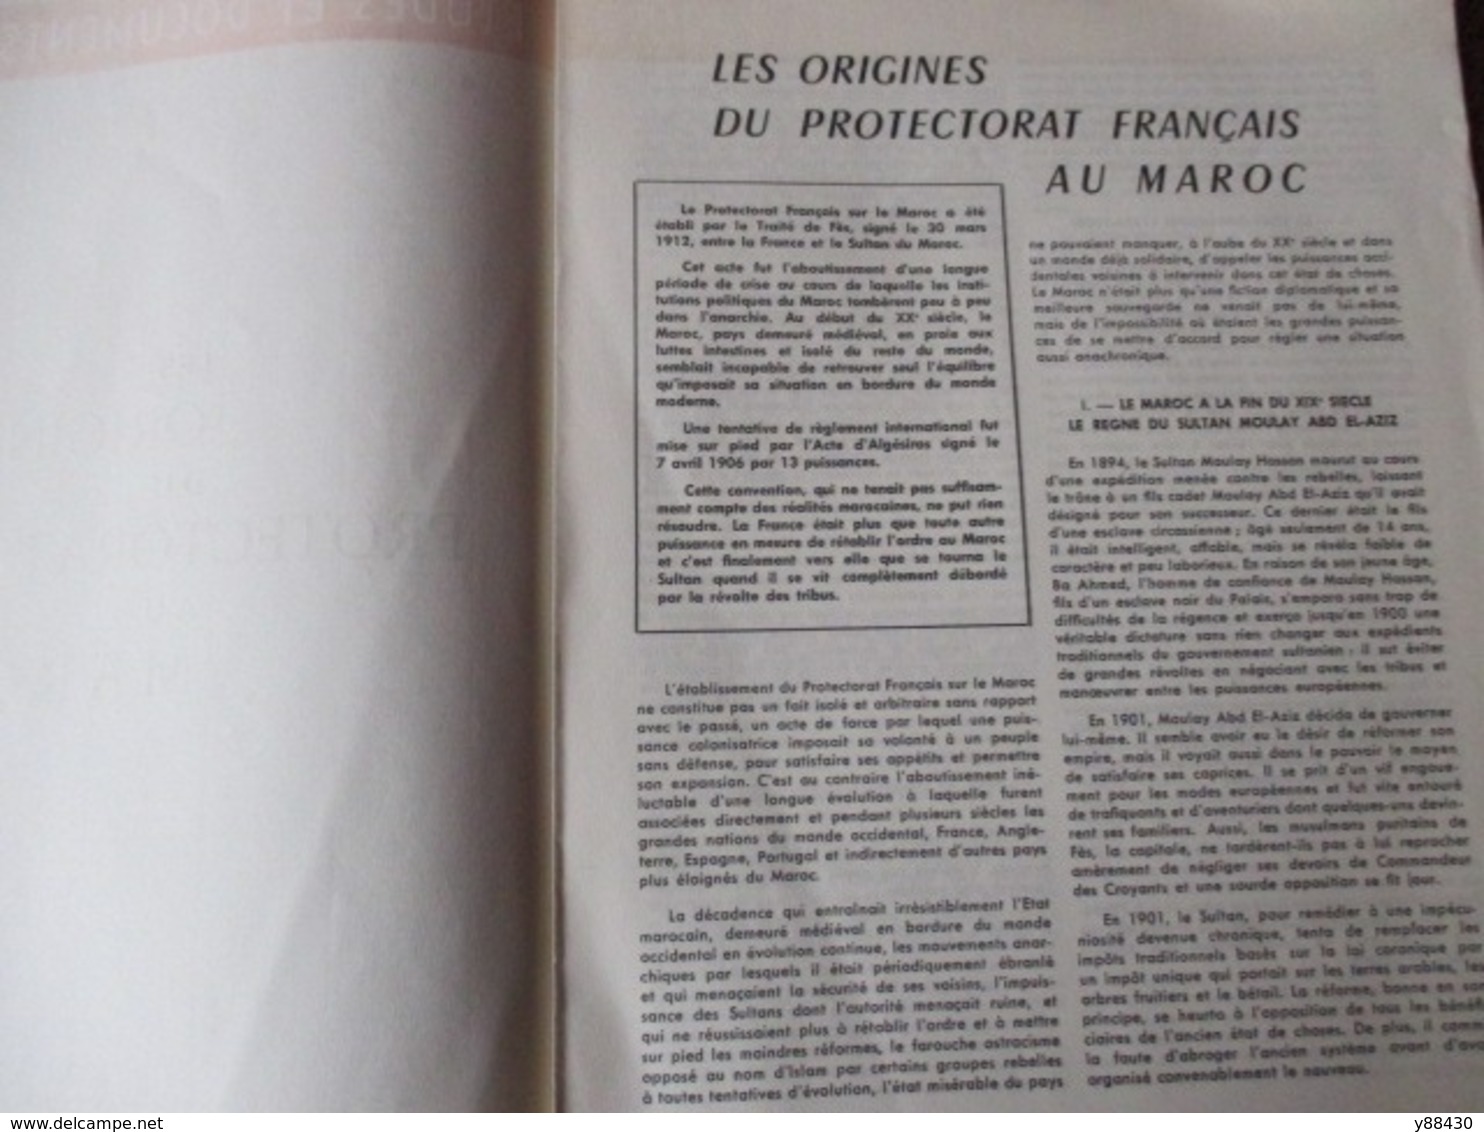 MAROC - Etudes et Documents Marocains - 6 fascicules des années 1950 - Administration/Financiers/Géographie... - 33 phot